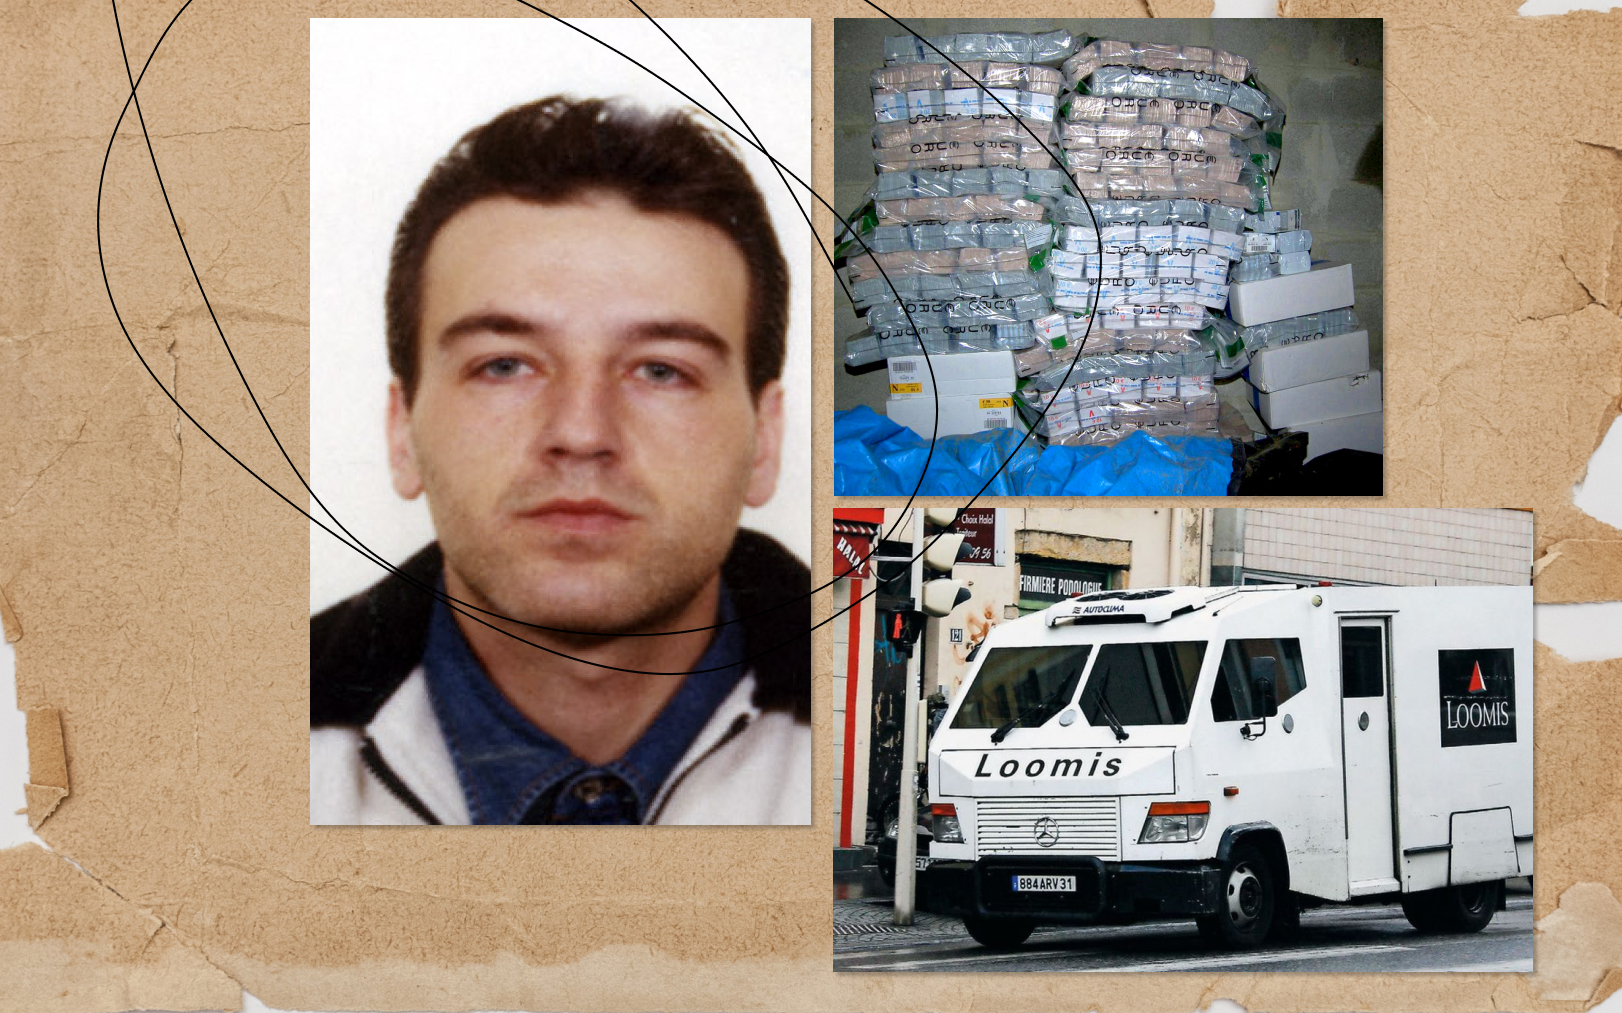 Portrait de Toni Musulin (à gauche), 9,1 millions d’euros des 11,6 millions volés (en haut à droite), le fourgon Loomis détourné à Lyon, le 5 novembre 2009 (en bas à droite). MAXPPP/Richard Mouillard. AFP/Police judiciaire